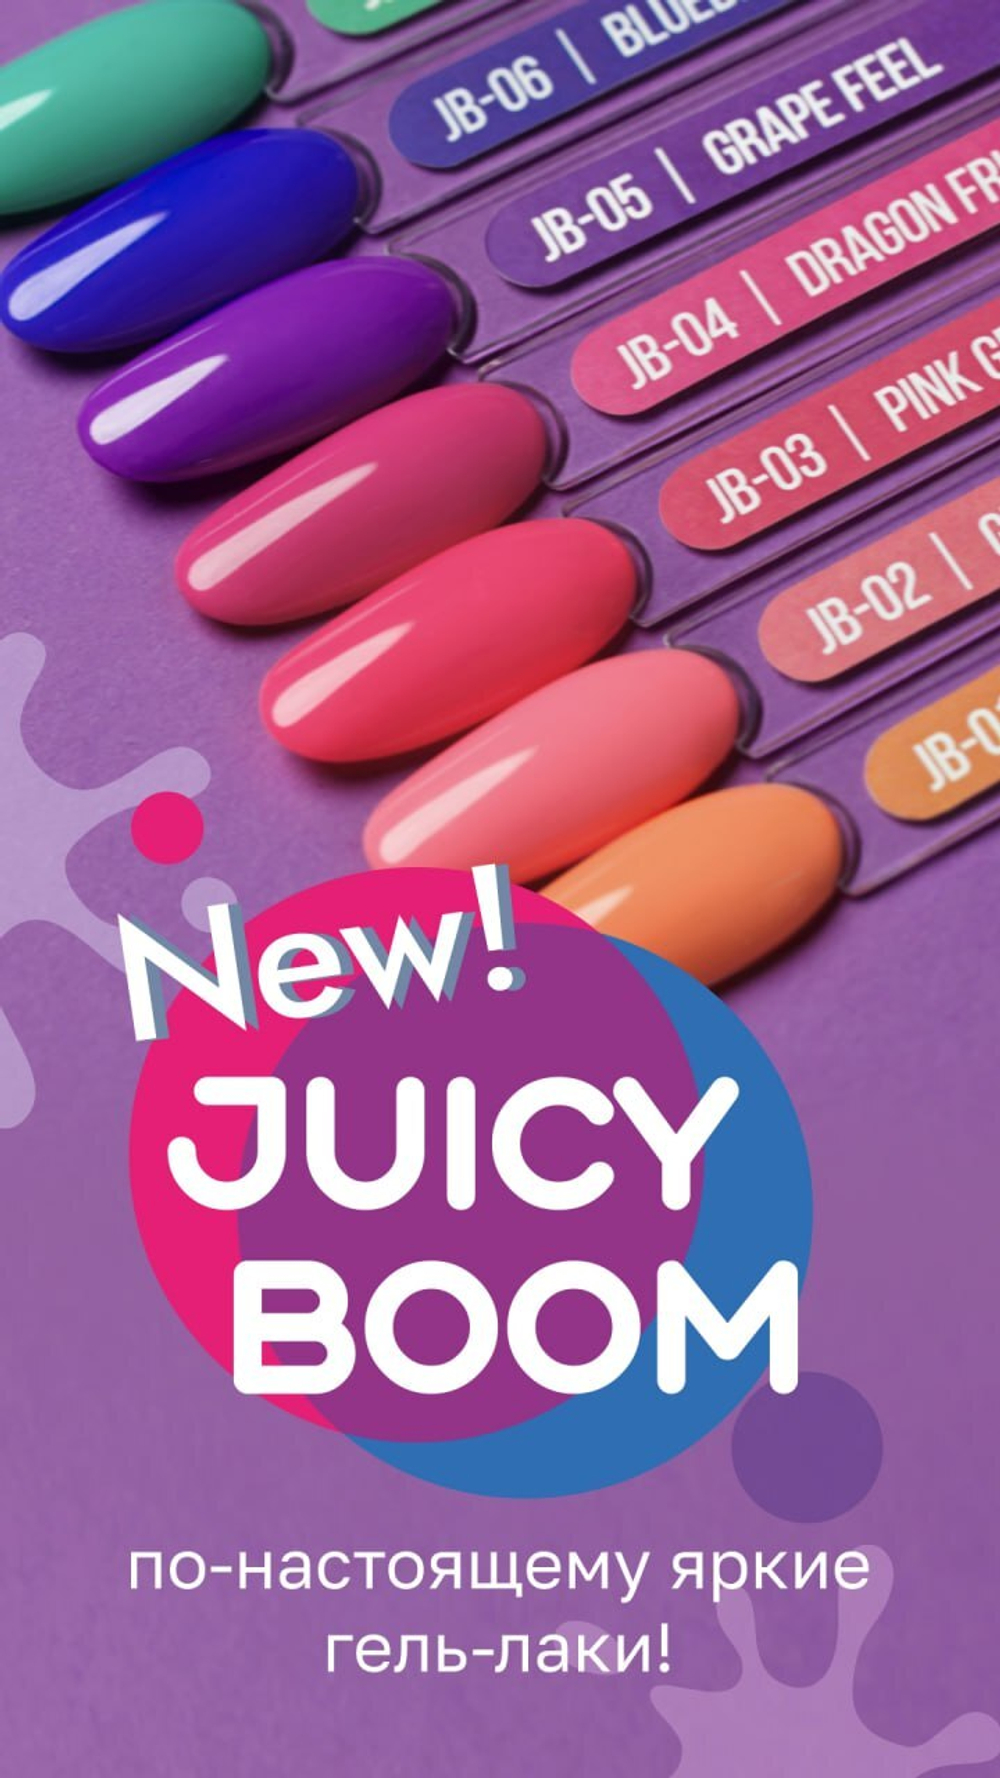 Гель-лак MIO NAILS Juicy Boom «Blueberry juice» № 06, 8мл